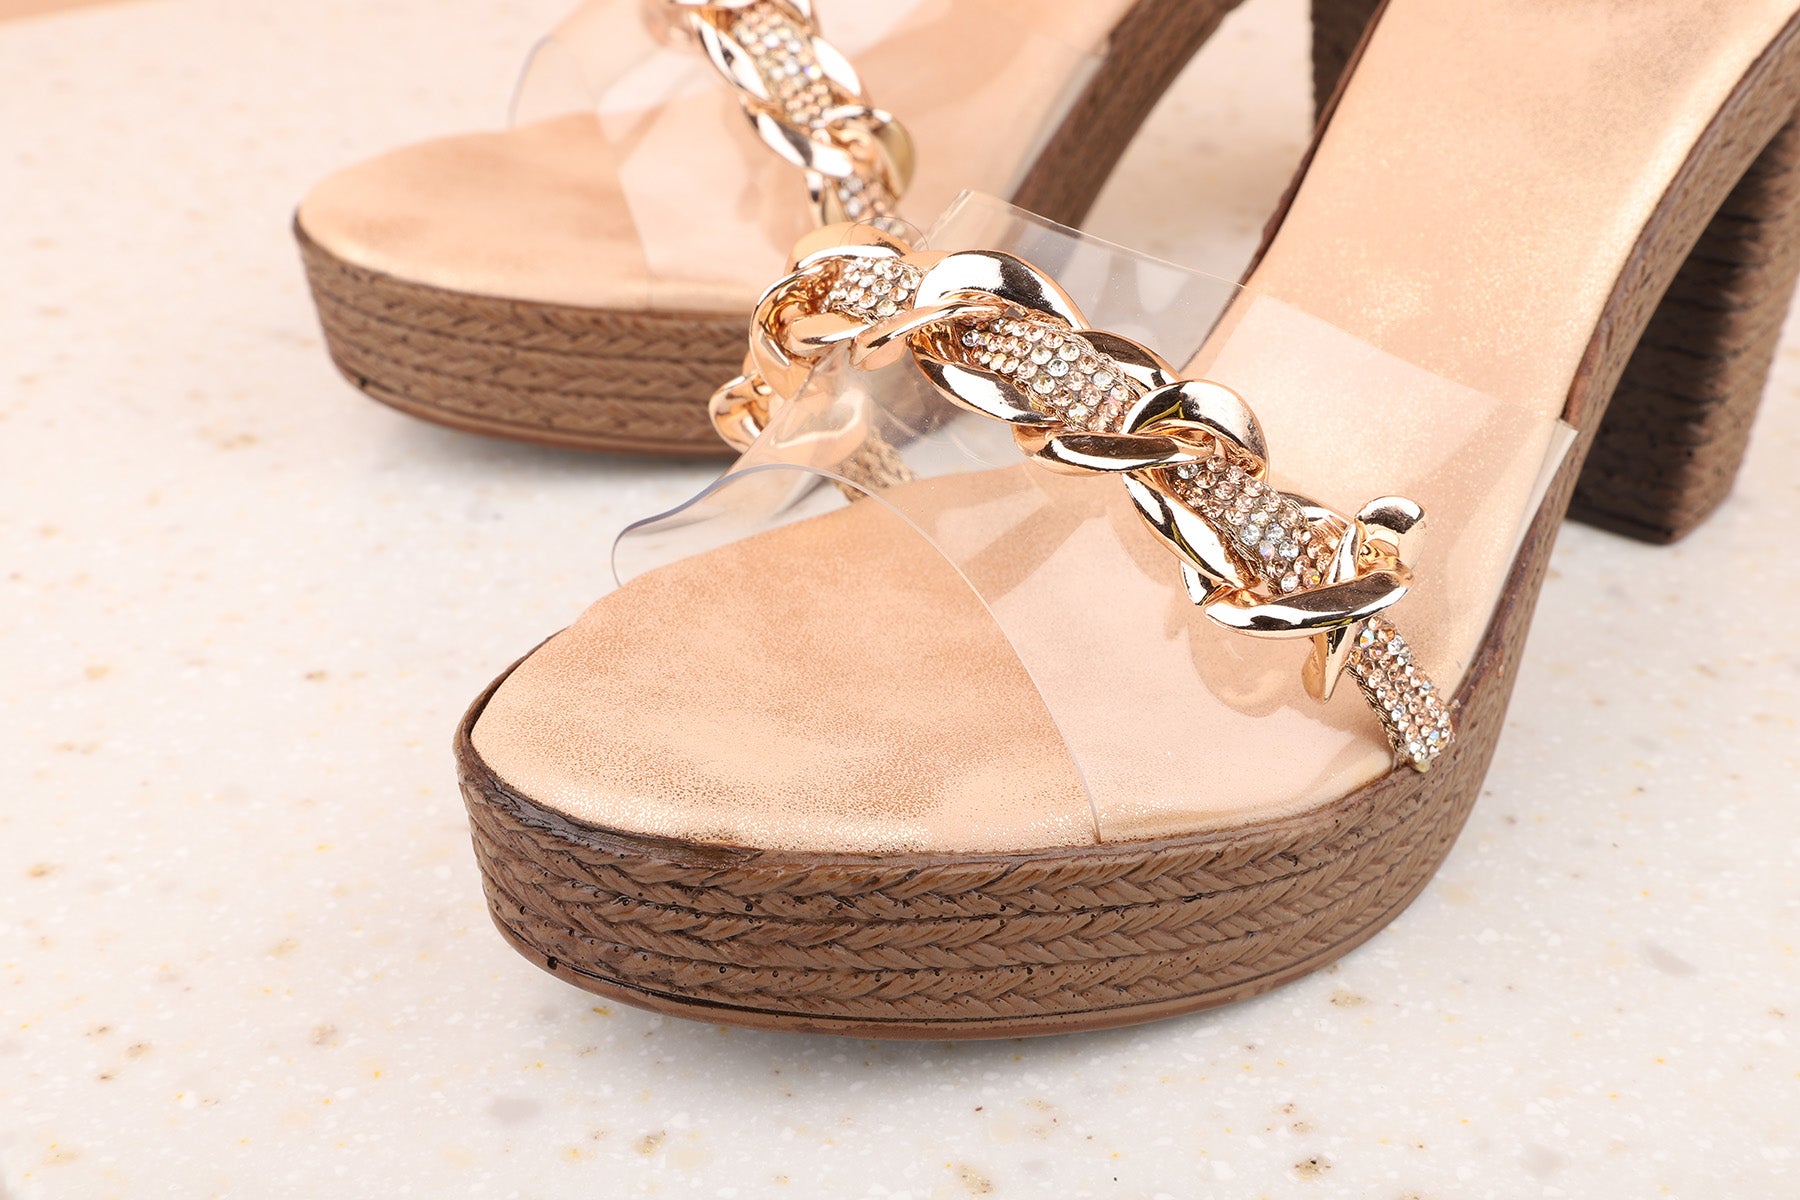 Buy Now Women Beige Textured Platform Heels – Inc5 Shoes